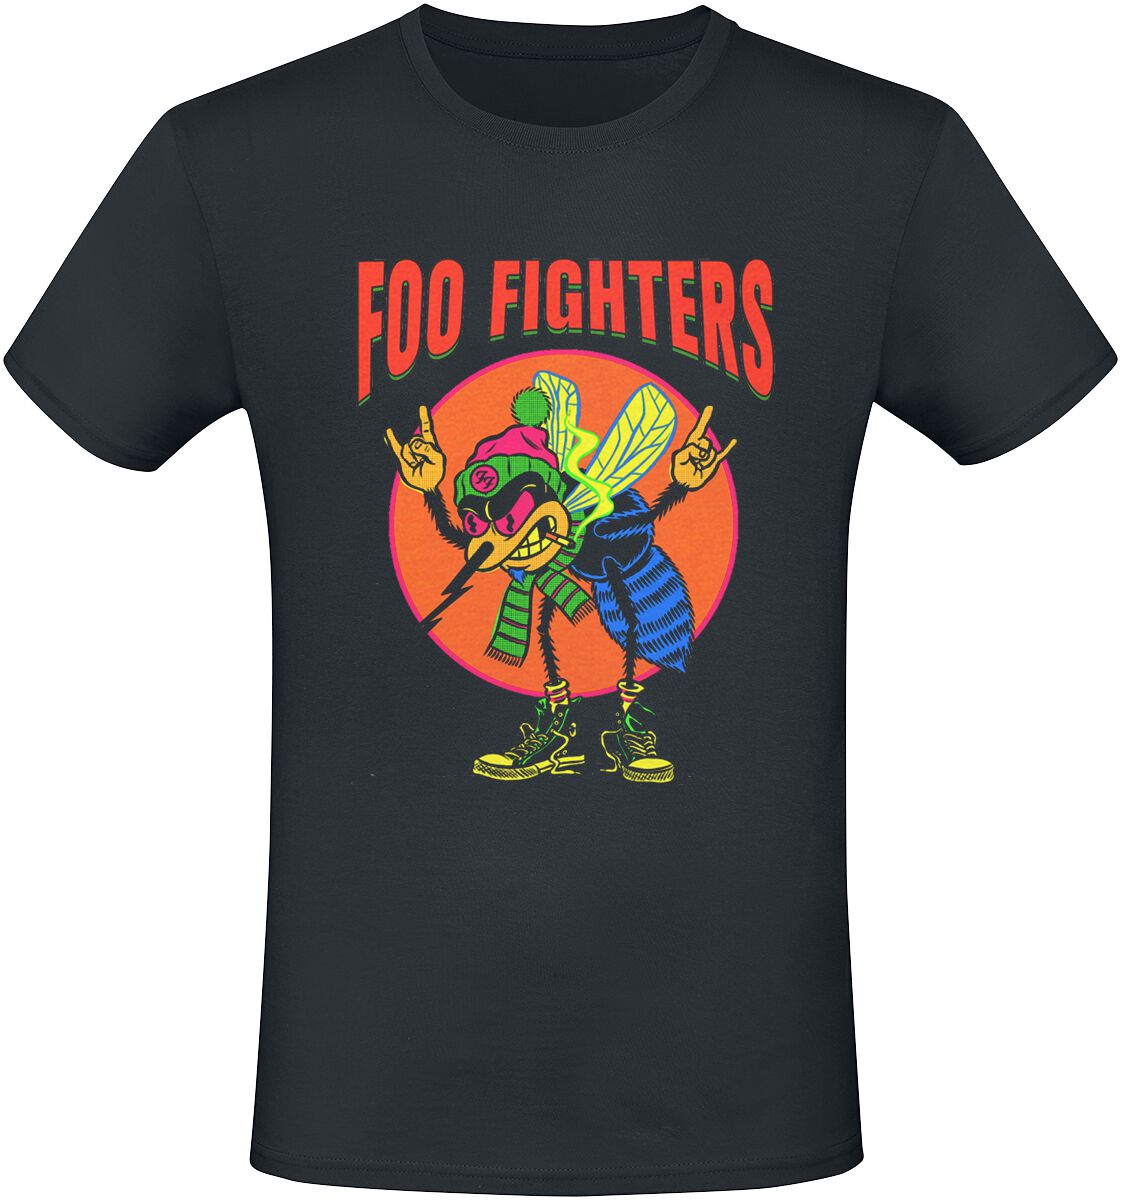 Foo Fighters T-Shirt - Mosquito - S bis 3XL - für Männer - Größe XXL - schwarz  - Lizenziertes Merchandise!